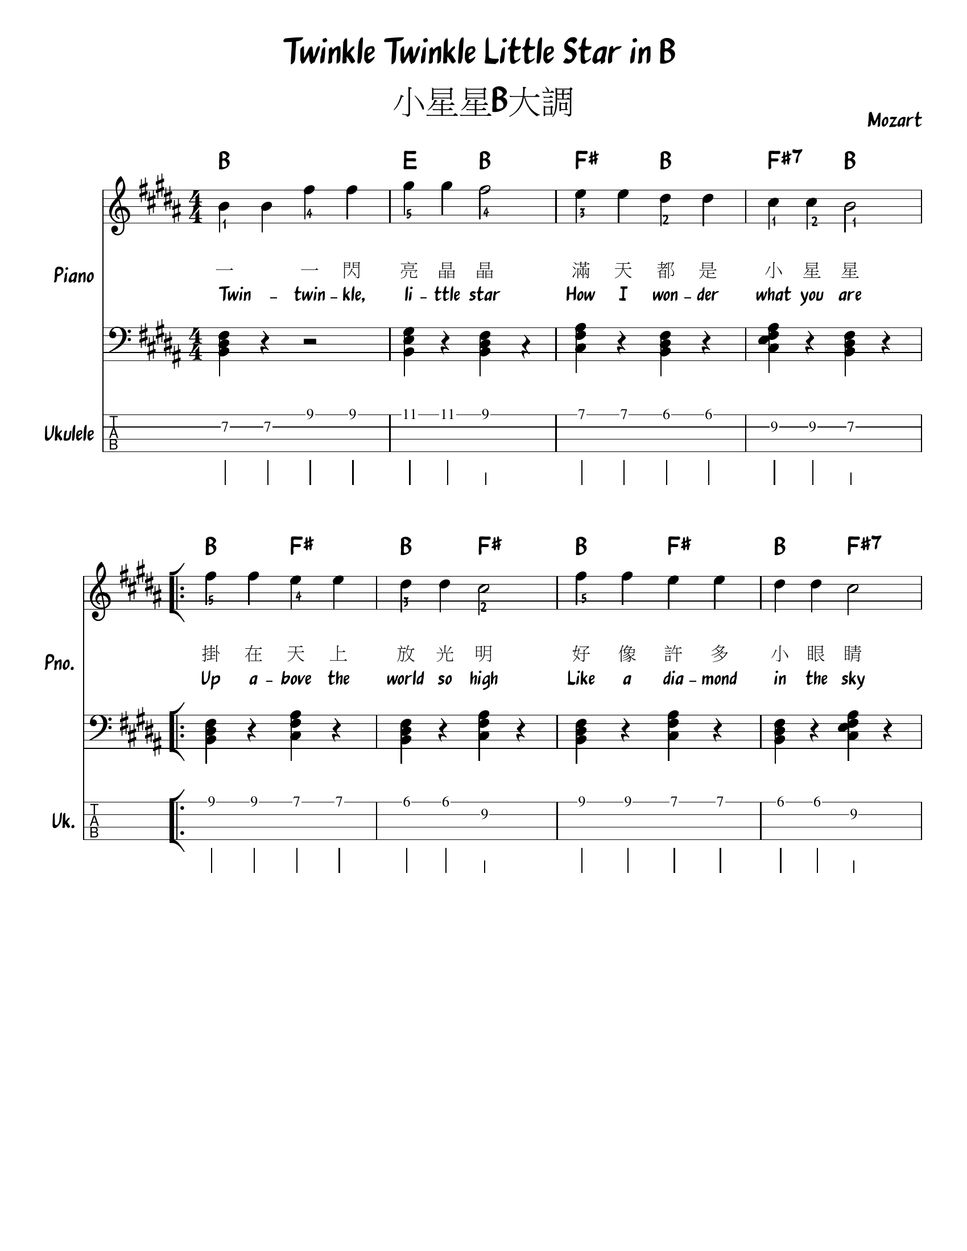 Mozart - Twinkle twinkle little stars in all 12 keys  (Chord/Melody/Piano/Ukulele tab) (Lead Sheet) Sheets